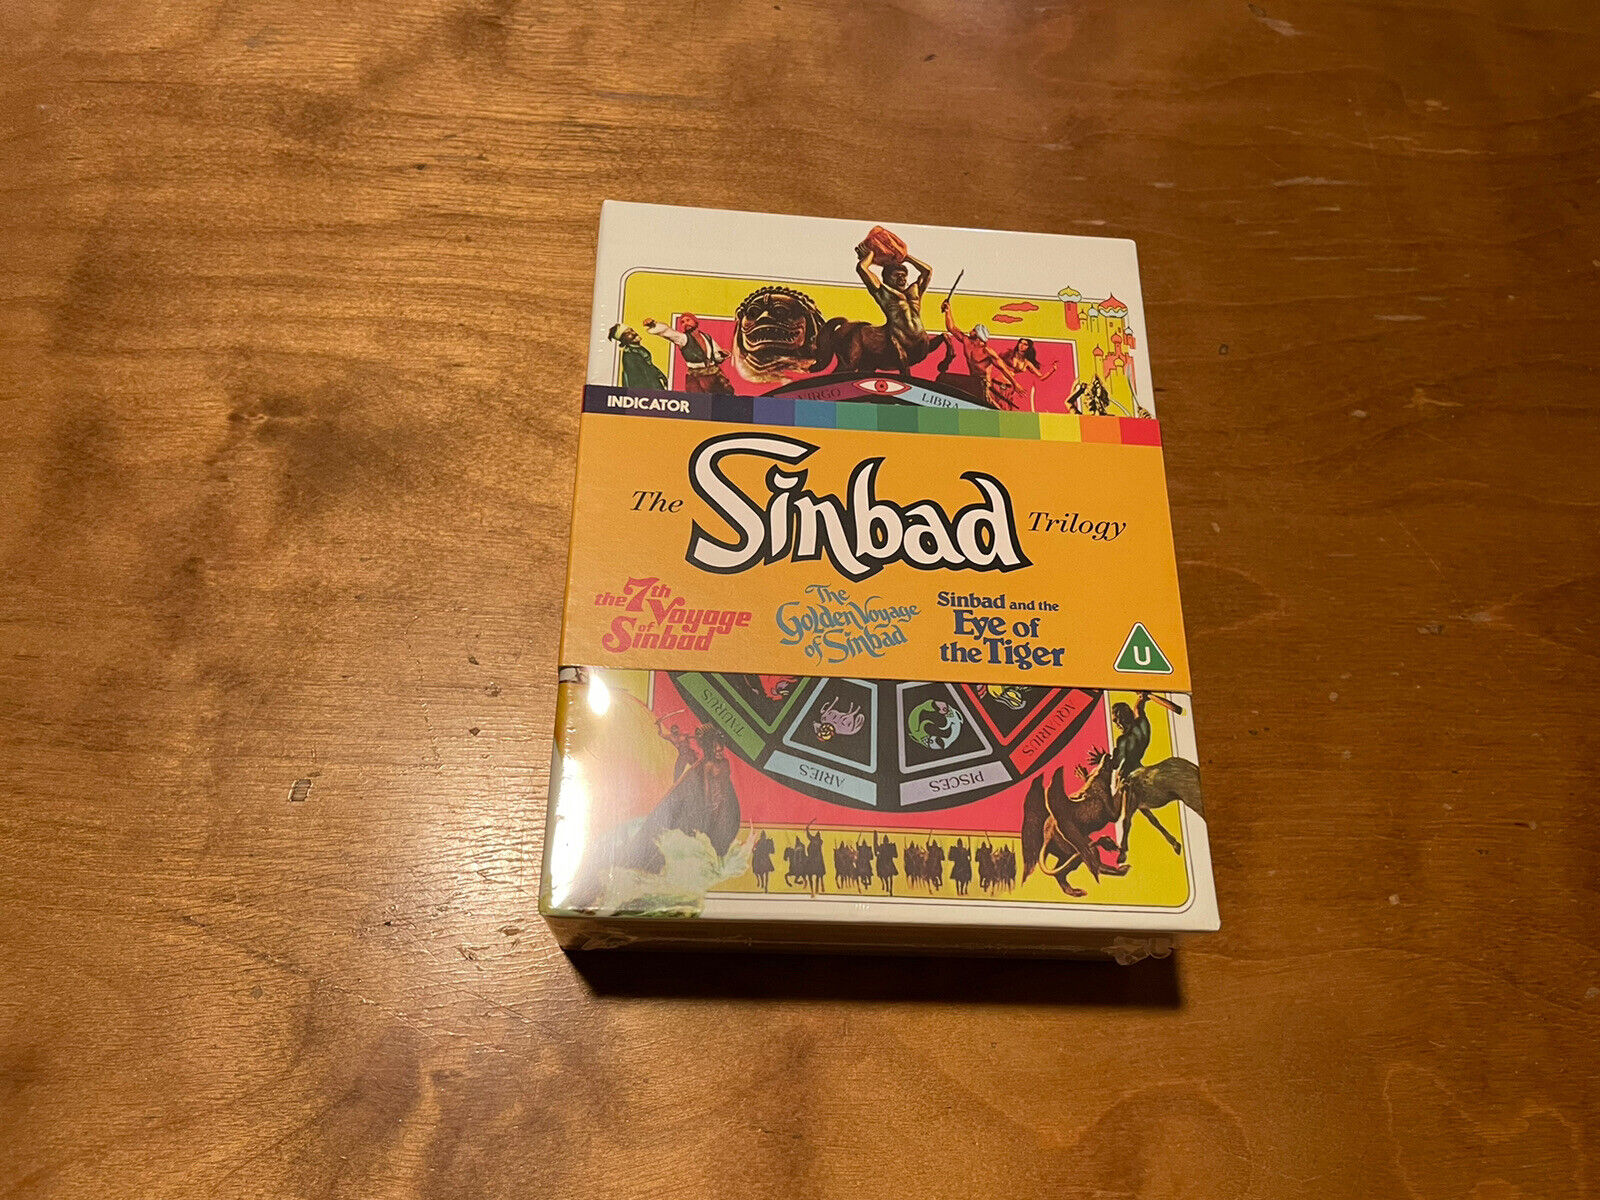 The Sinbad Trilogy Blu ray*Indicator*Region Free*Limited Edition*3000 Made*NEW* Świetna wartość, zapewnienie jakości